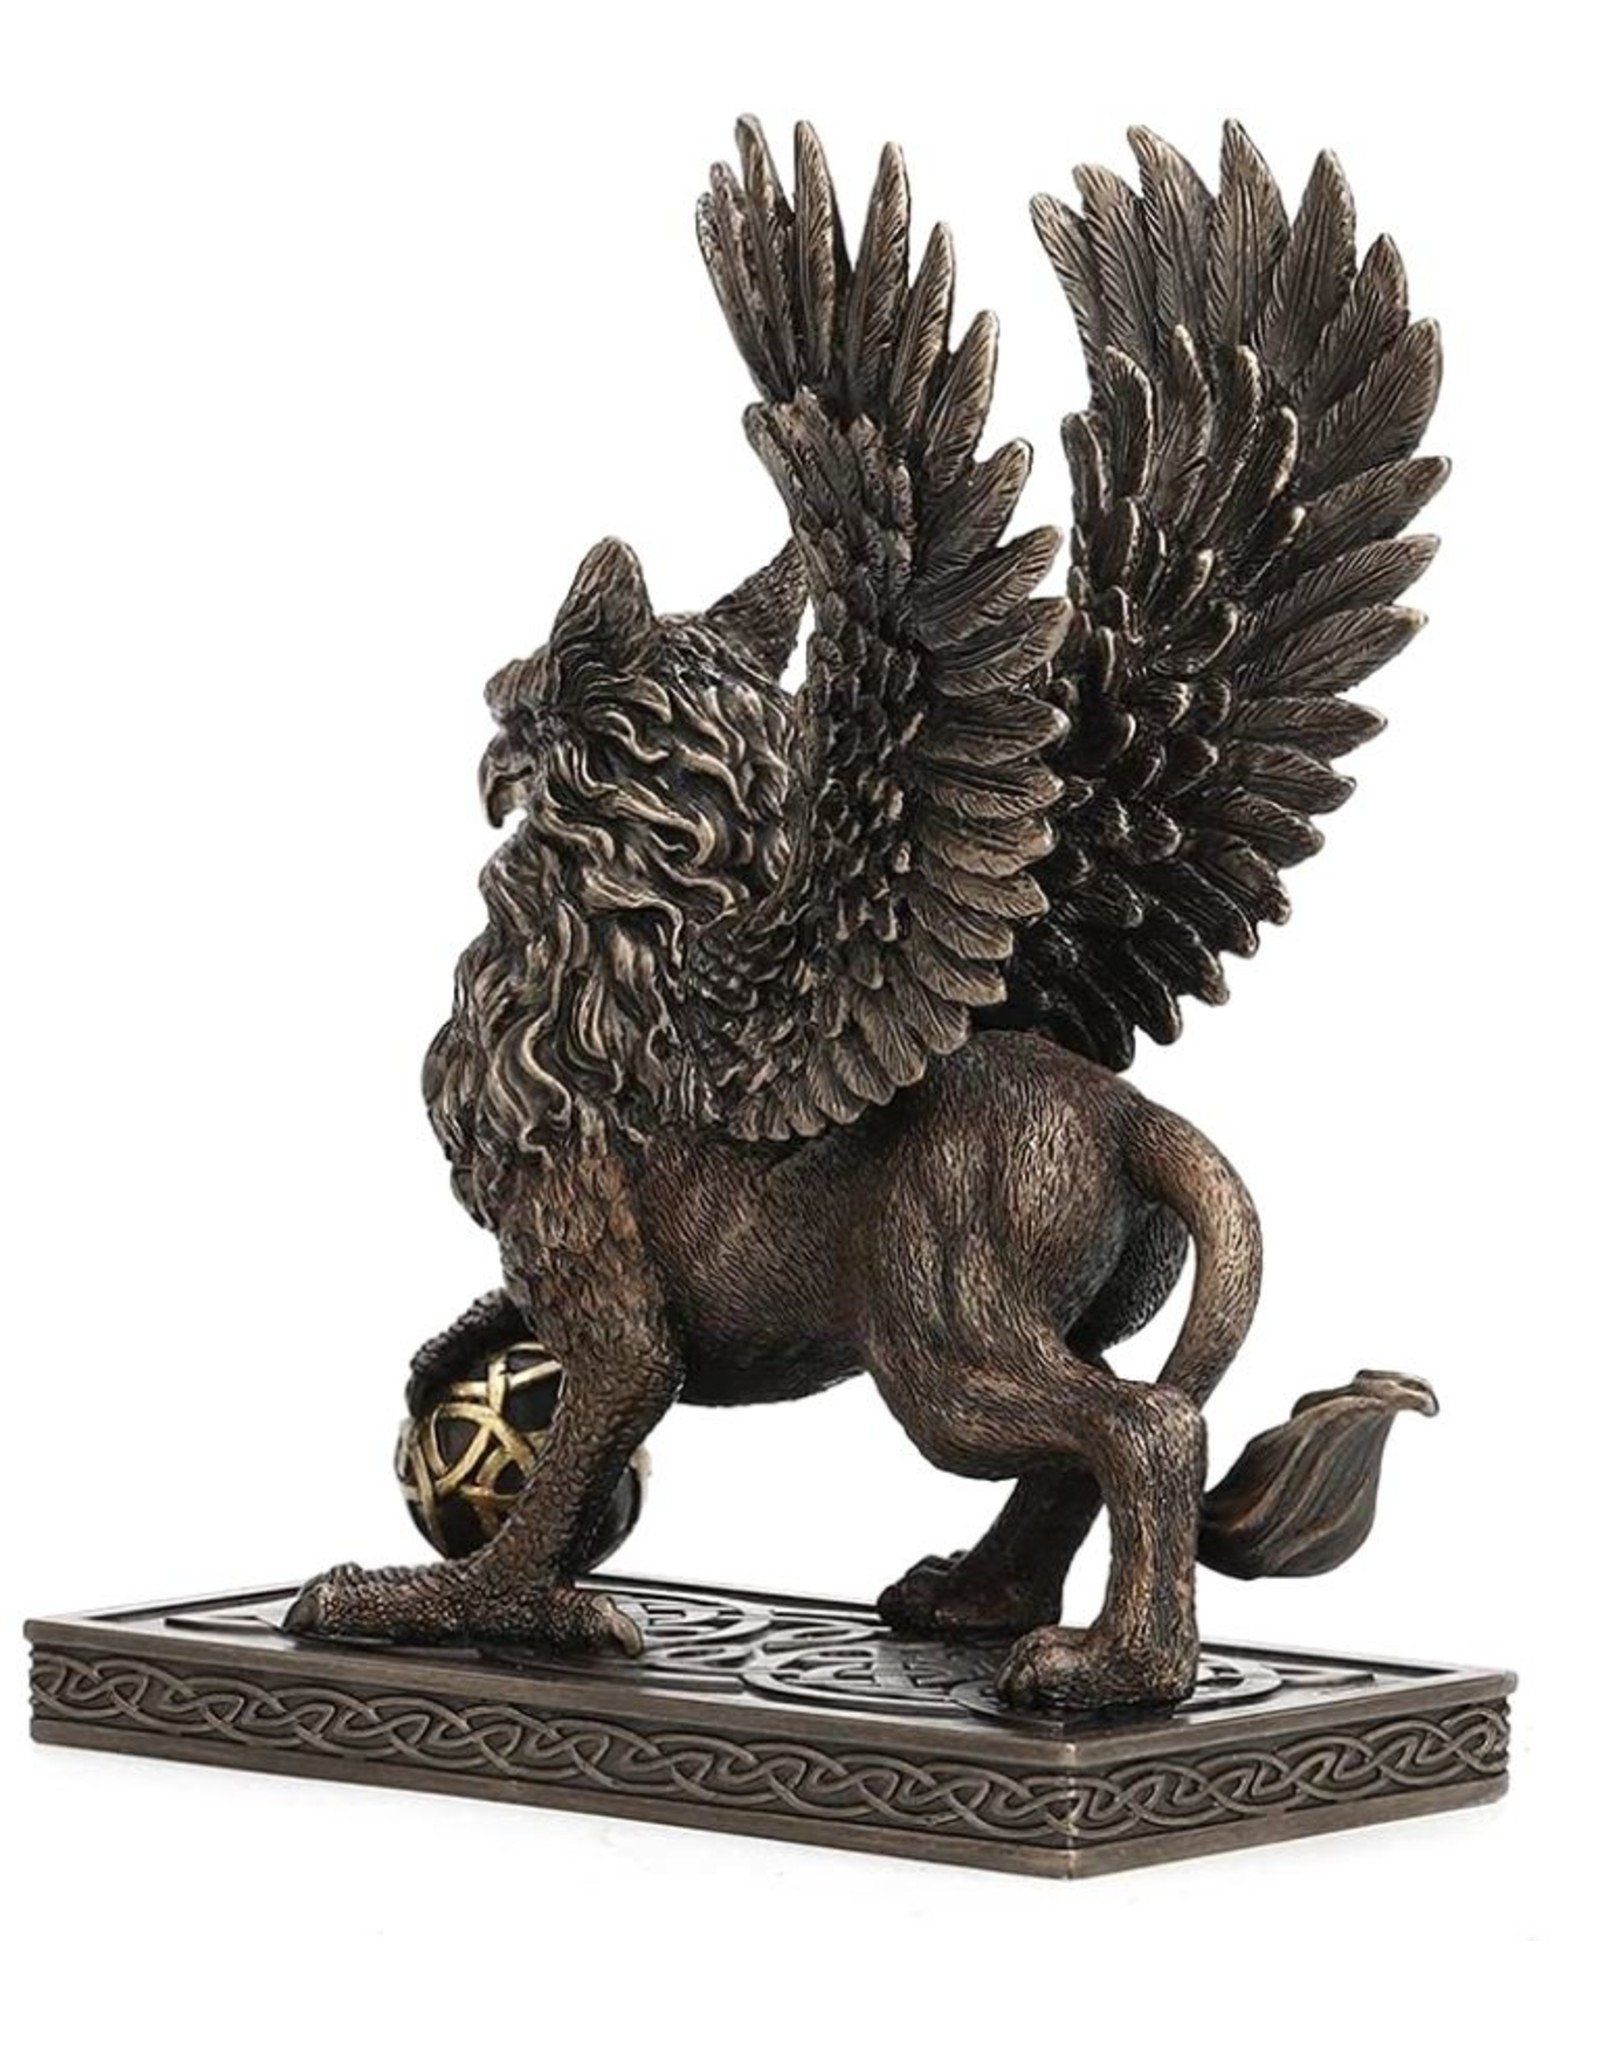 Veronese Design Giftware & Lifestyle - Griffin Bronzed Figurine